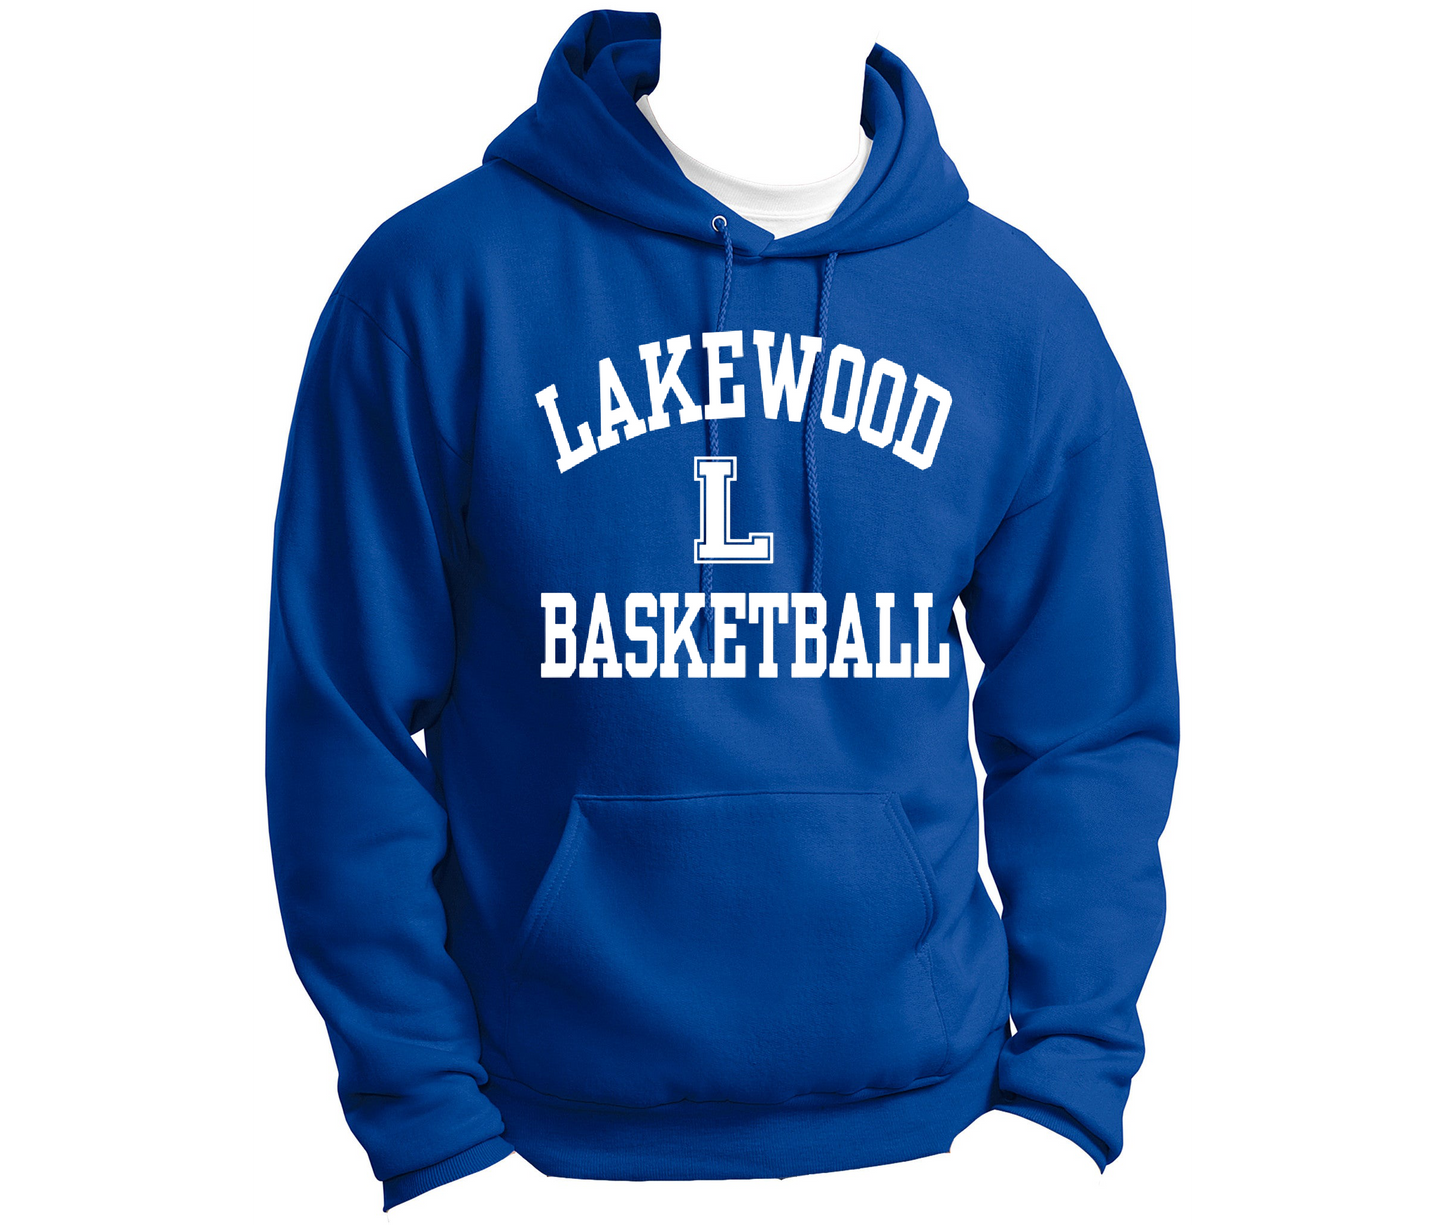 Lakewood Lancers Lakewood Athletics or Custom Sport Hoodie